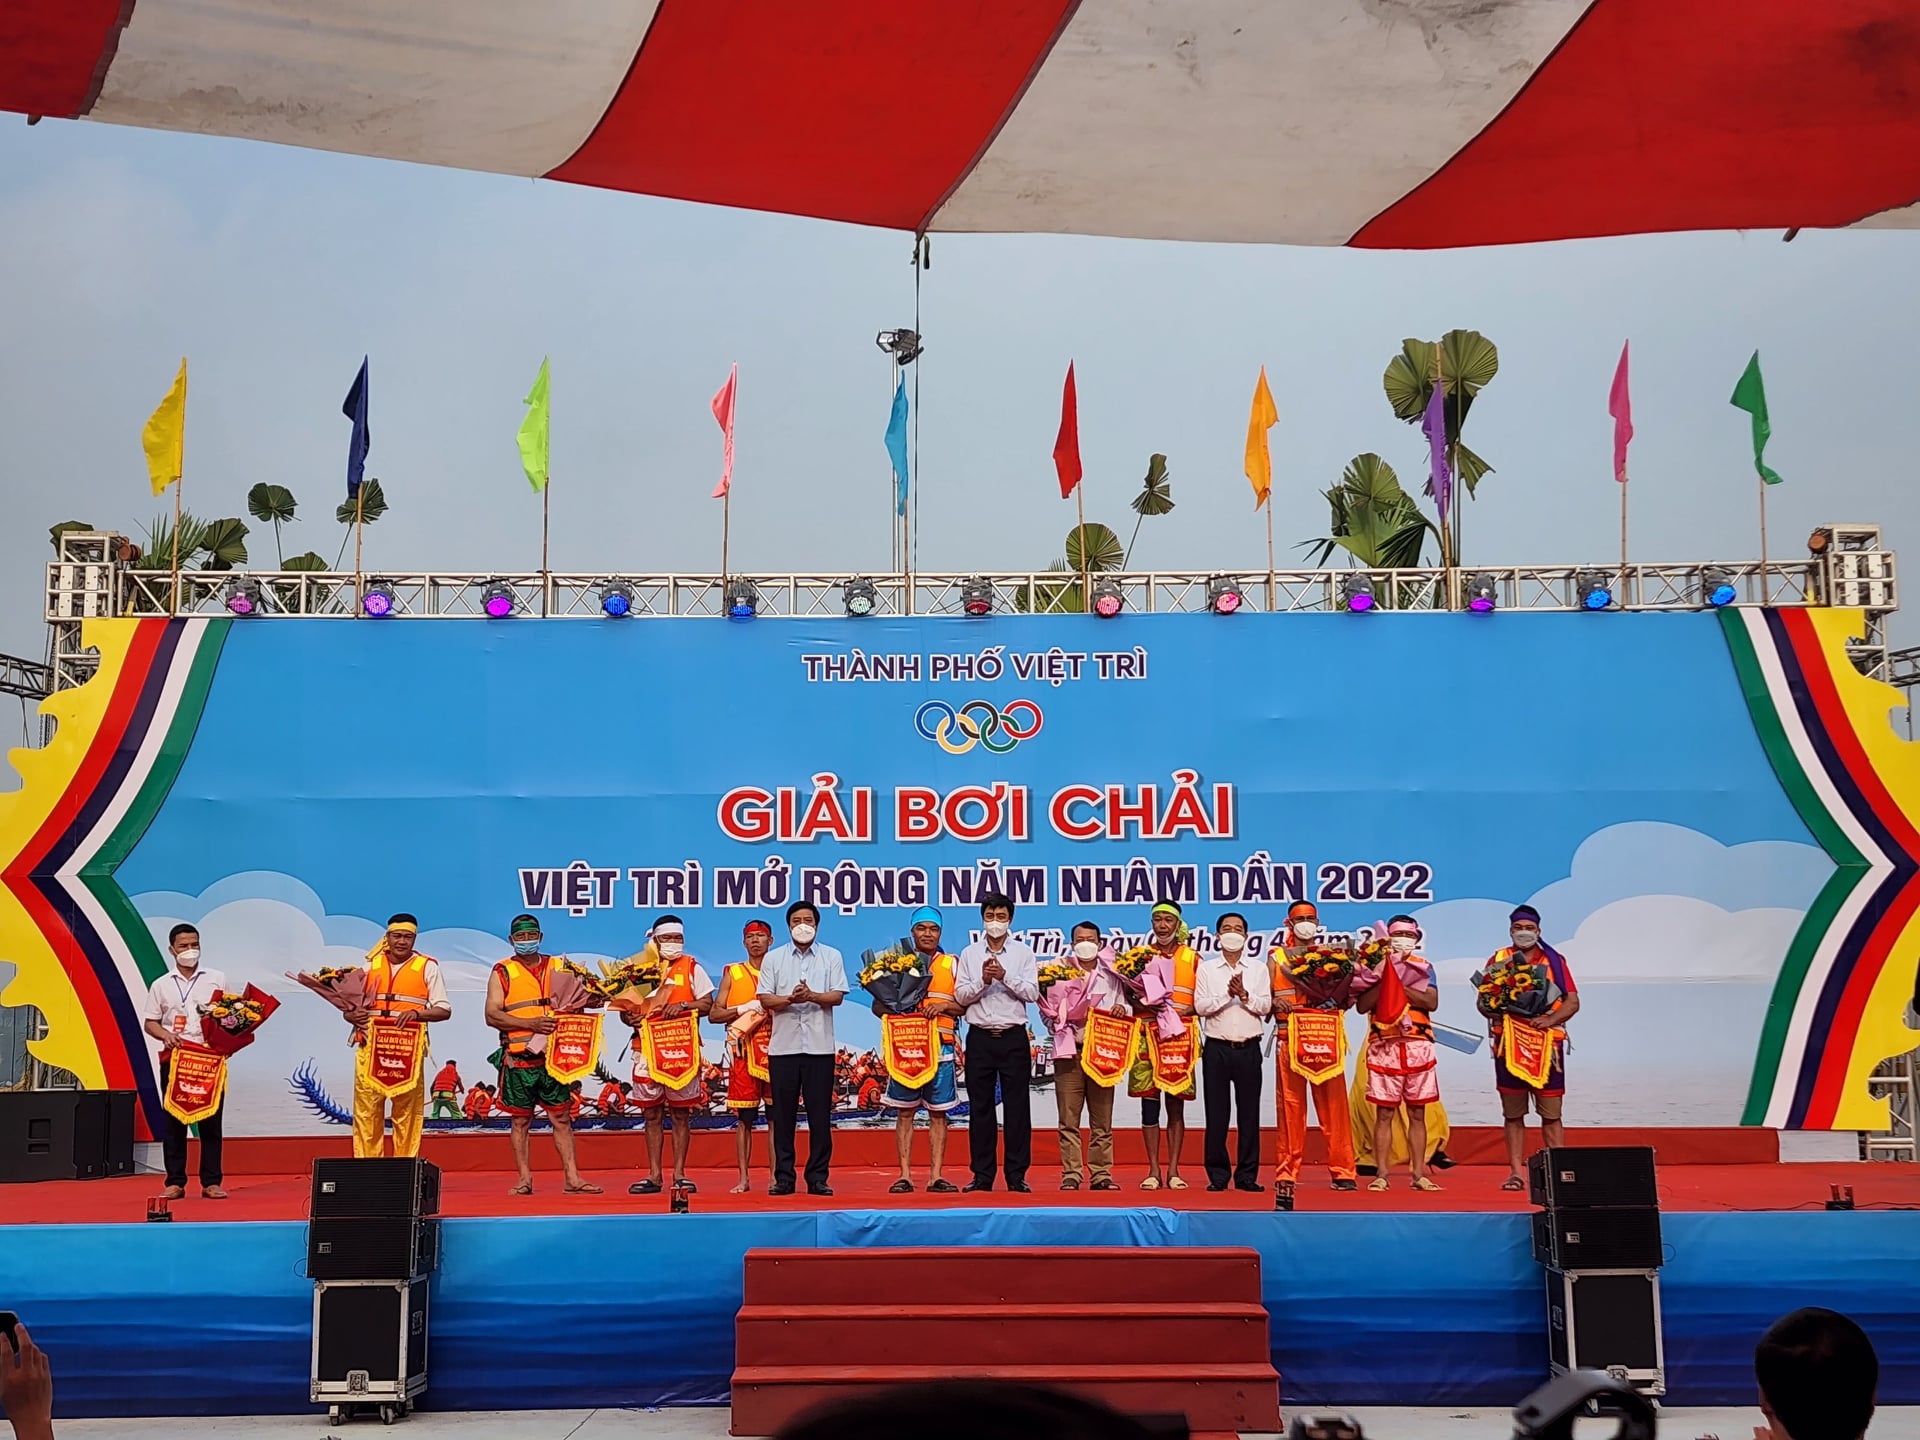 Giải Bơi chải thành phố Việt Trì mở rộng năm Nhân Dần 2022